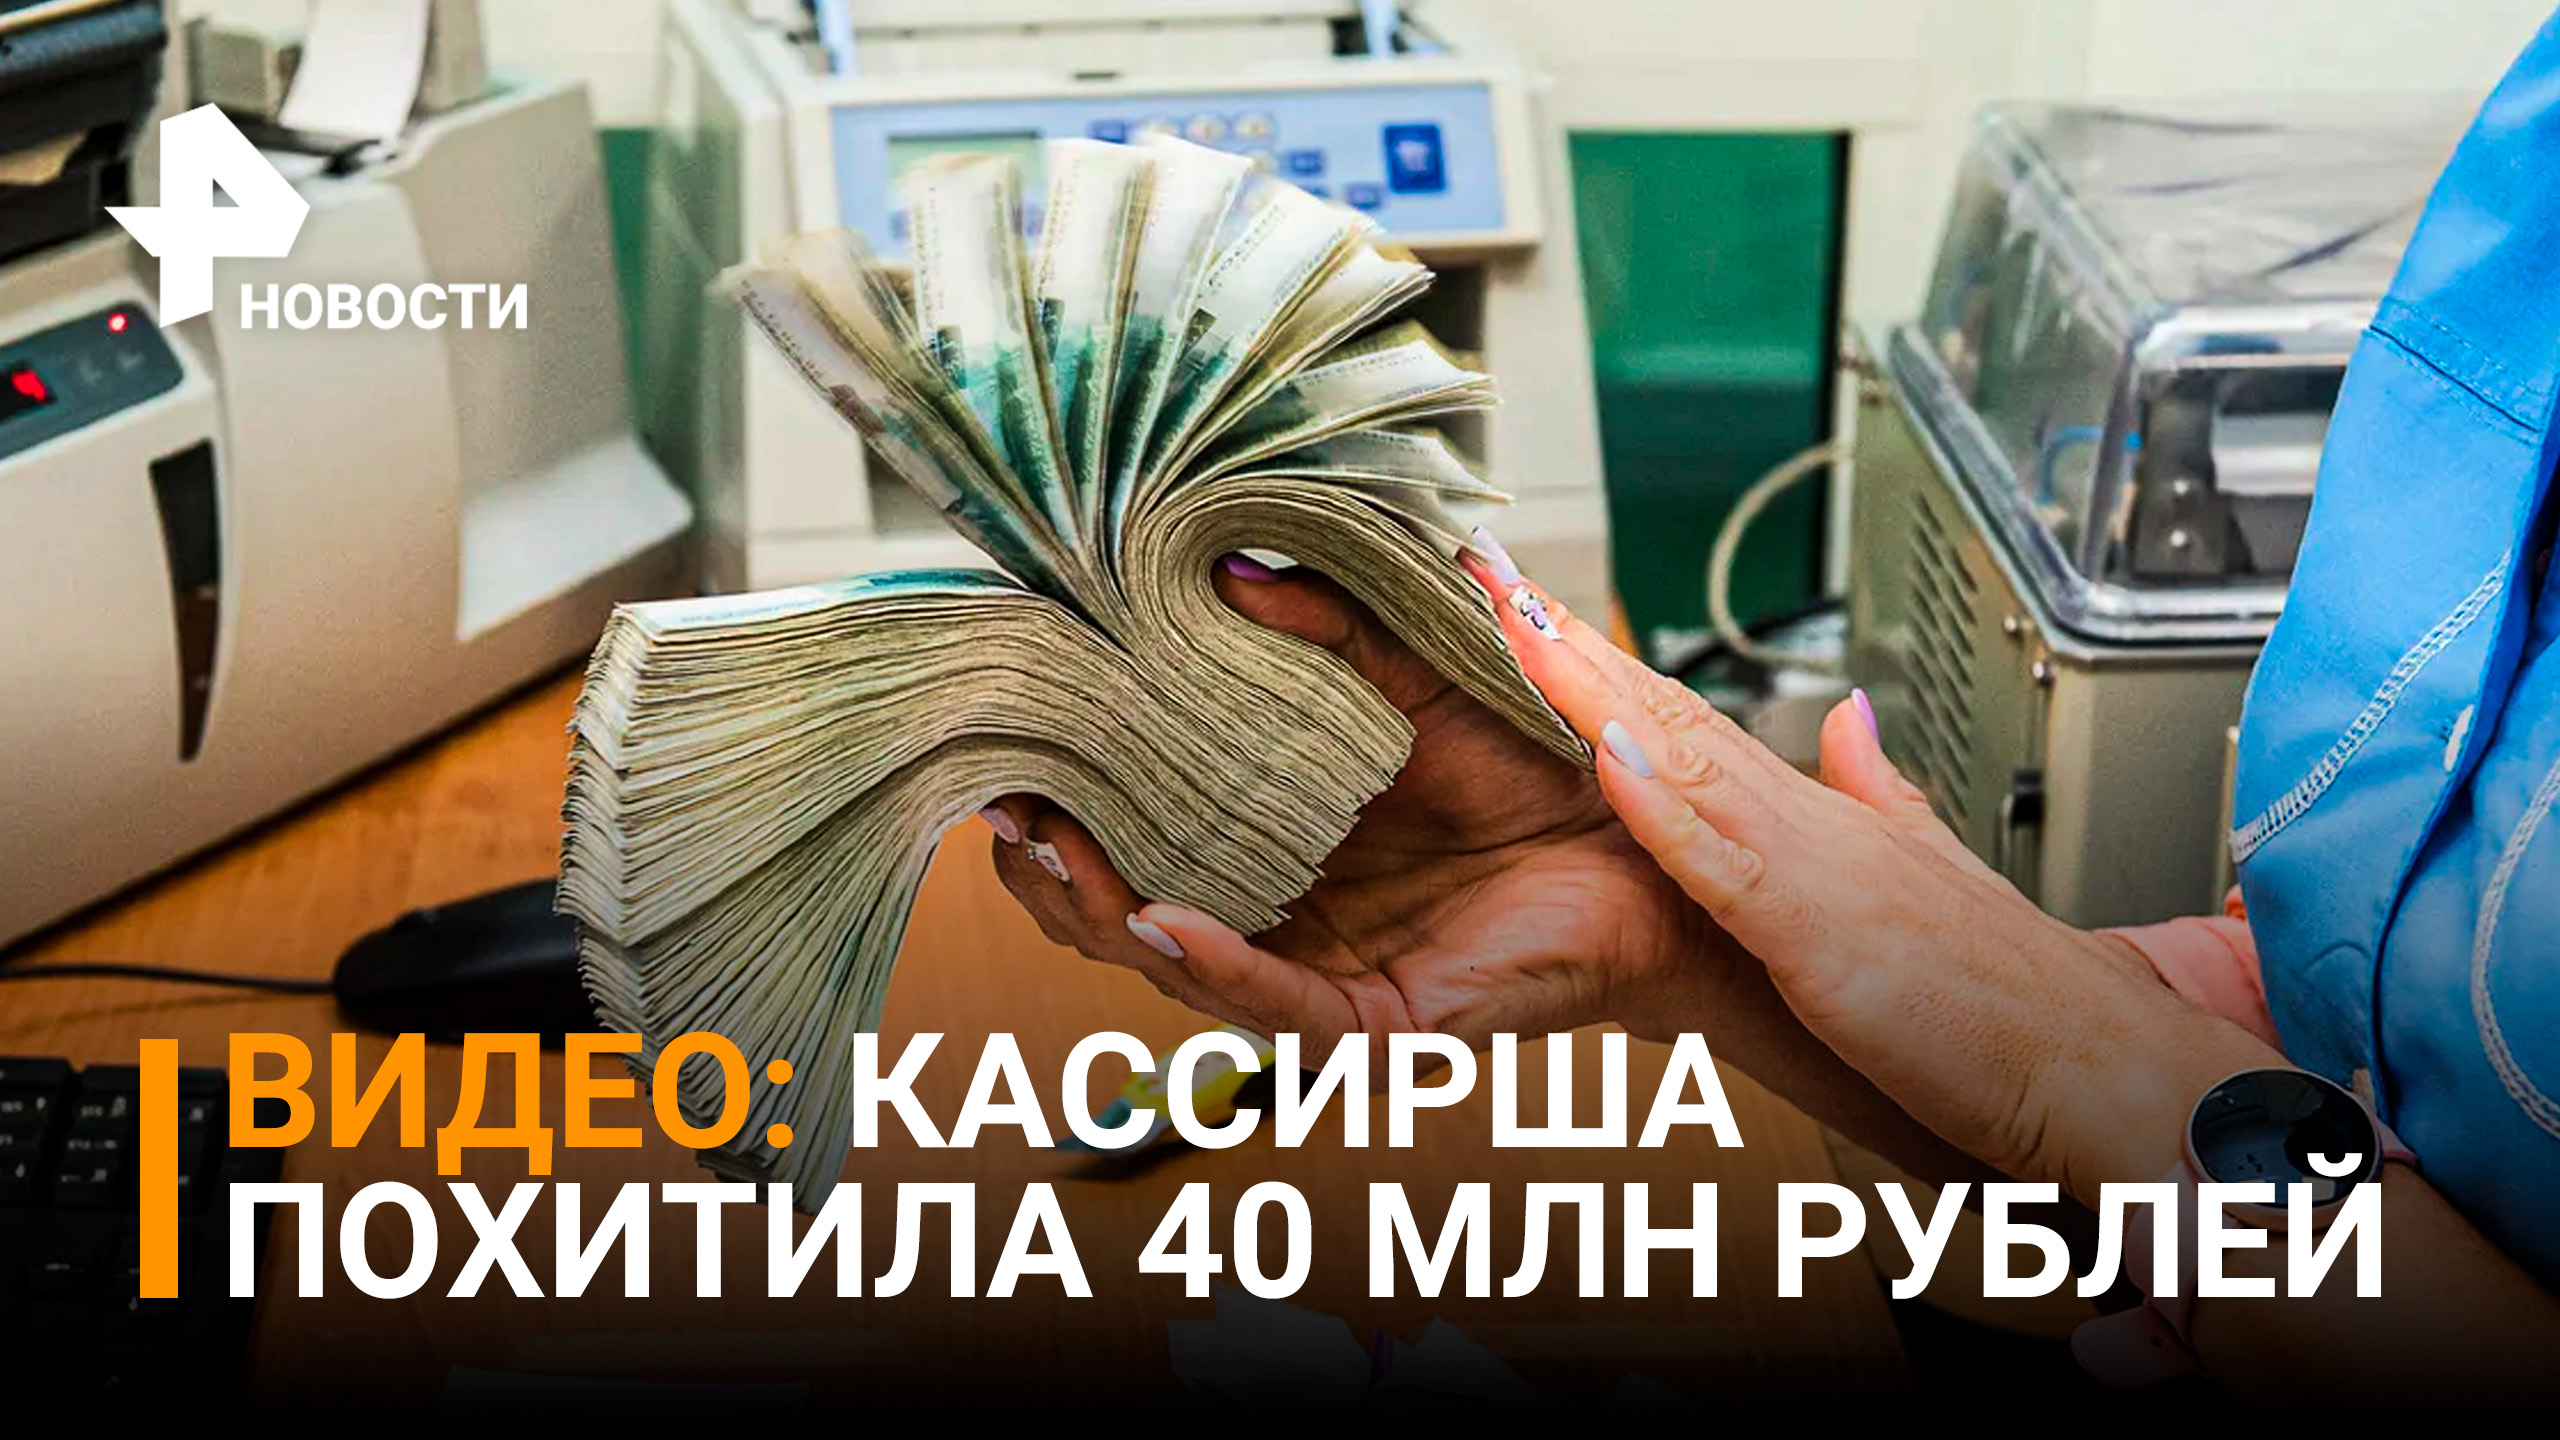 Эпичная кража в обменнике попала на видео: кассирша похитила у мужчины 40 млн рублей / РЕН Новости